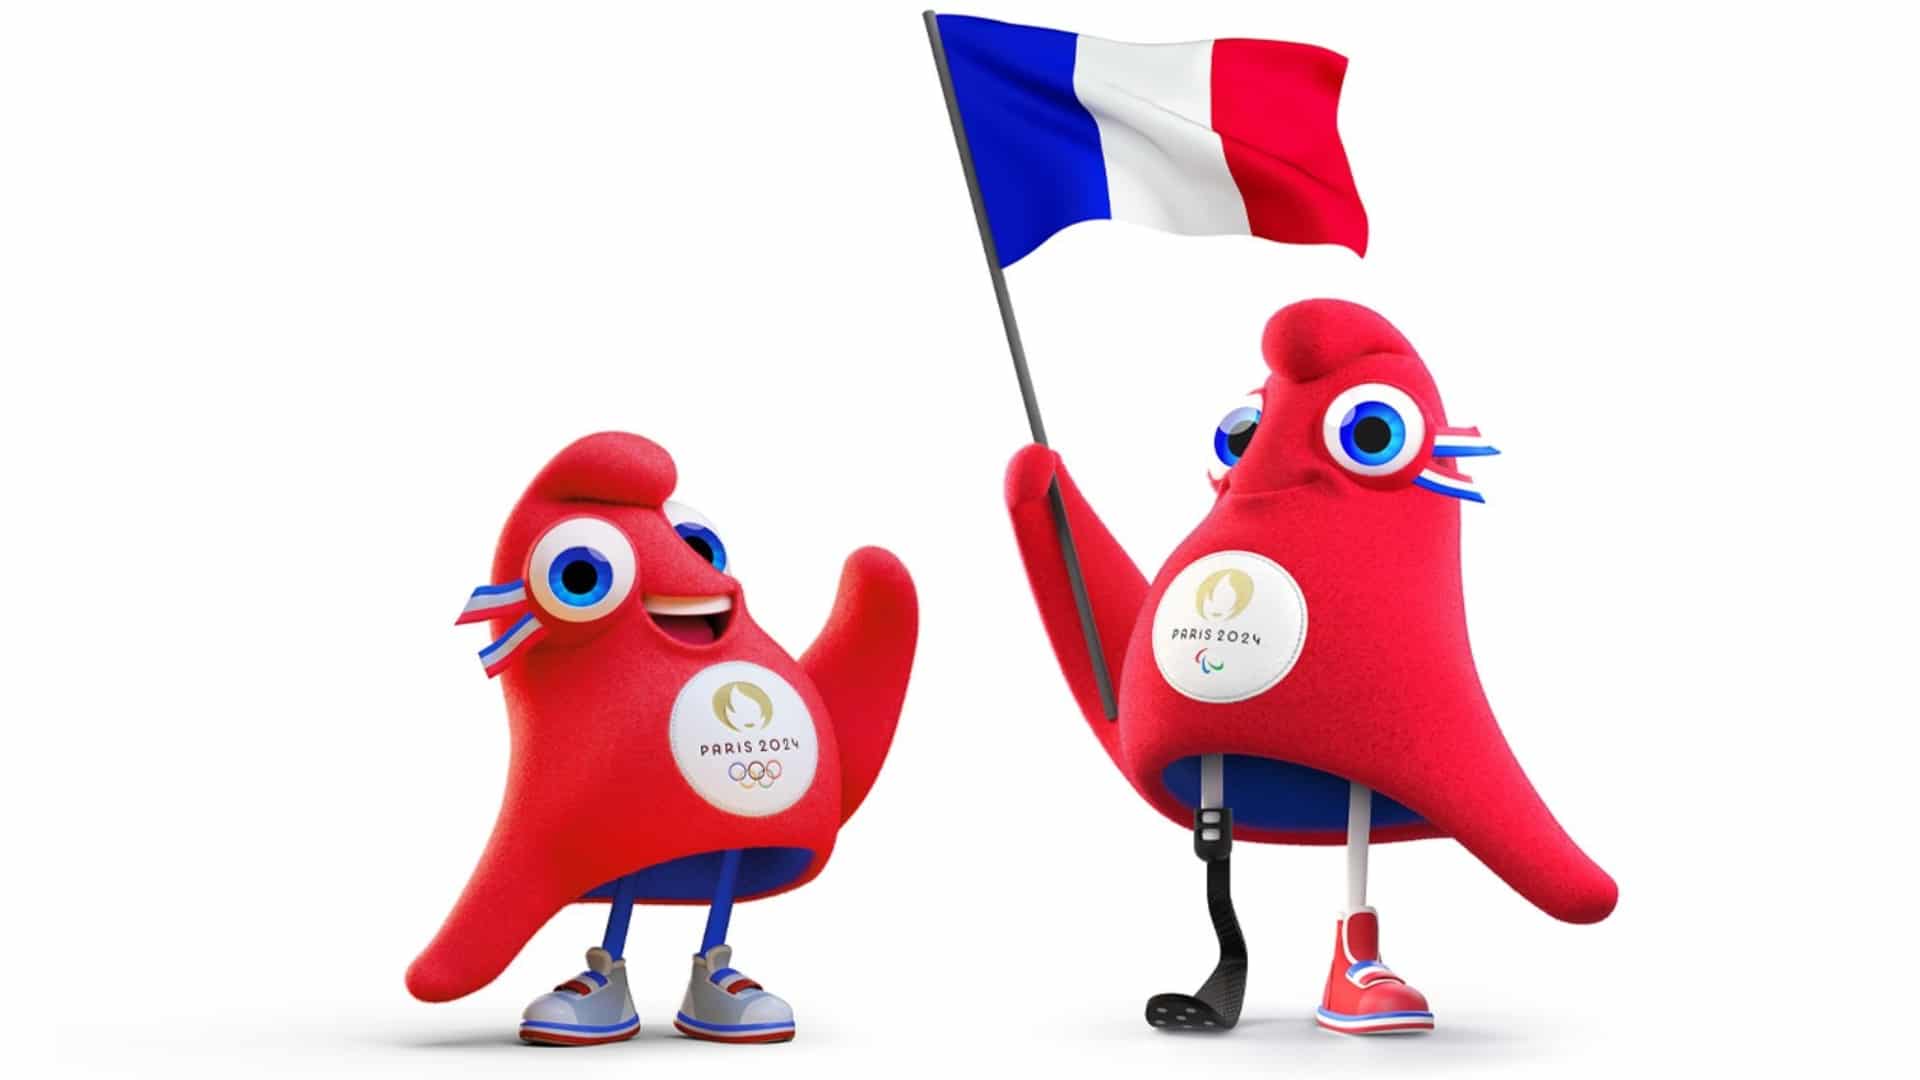 O mascote dos Jogos Olímpicos de Paris 2024 será um chapéu - GKPB